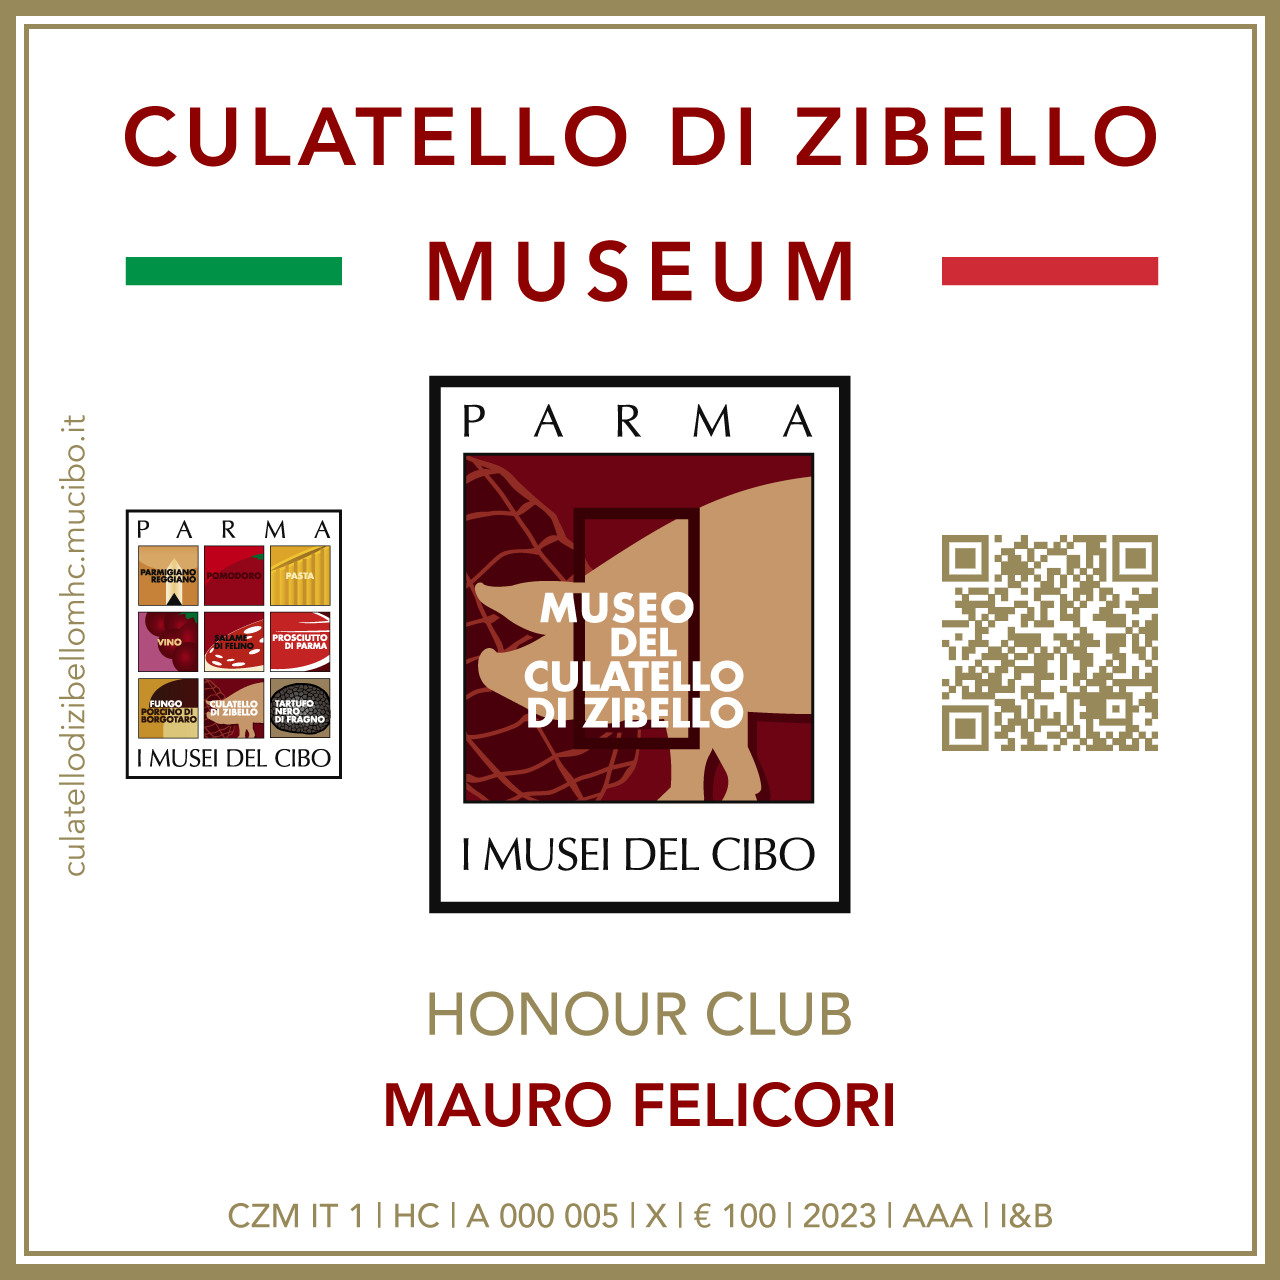 Culatello di Zibello Museum Honour Club - Token Id A 000 005 - MAURO FELICORI